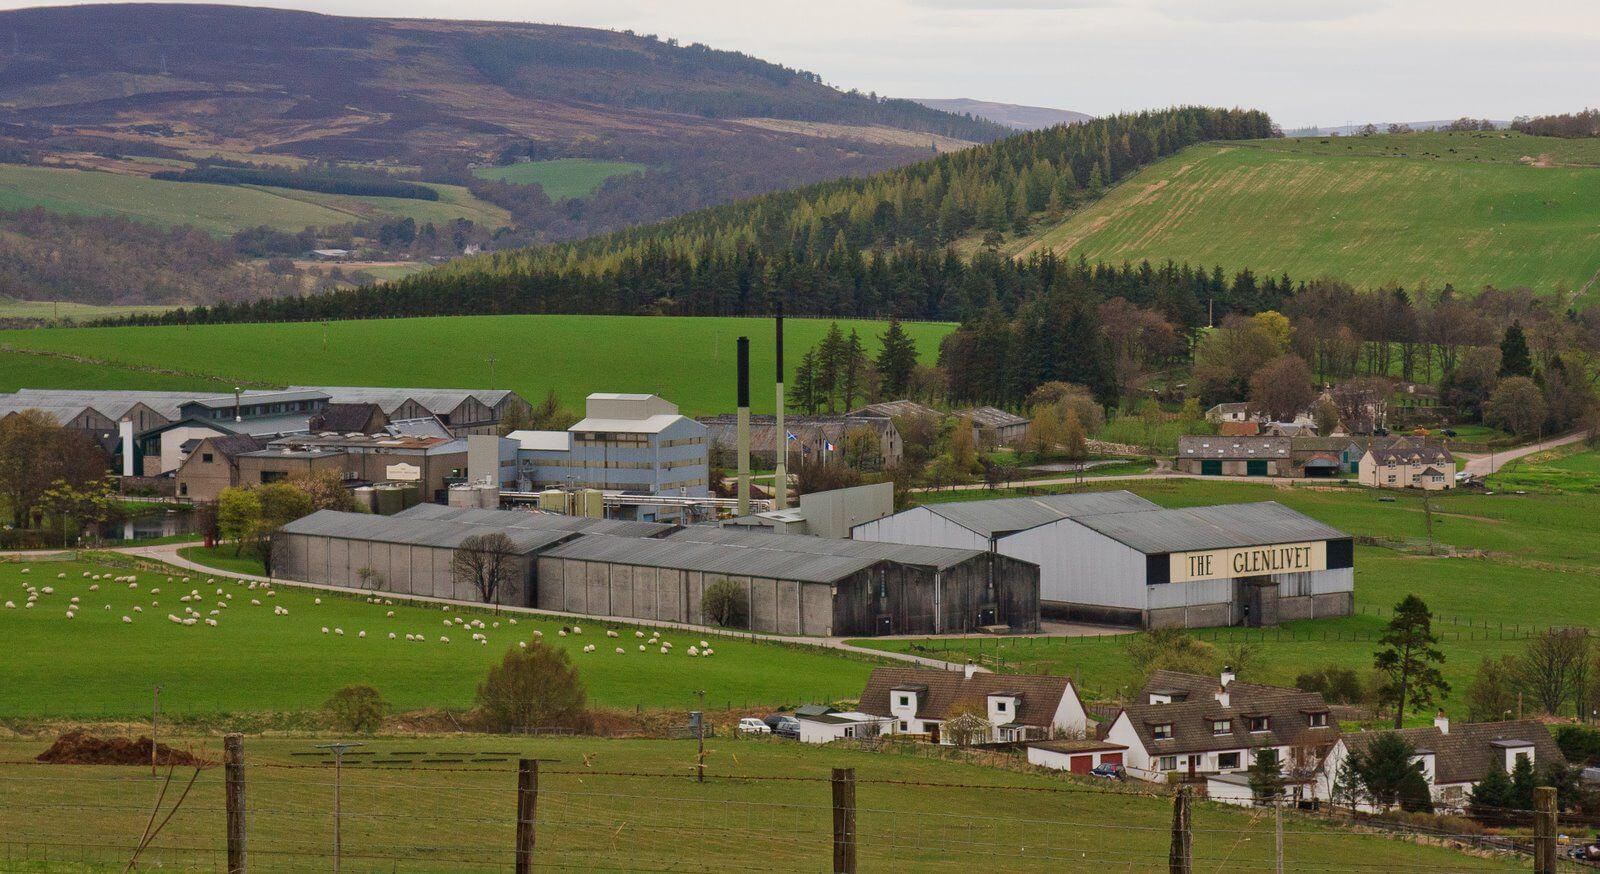 Glenlivet là nhà máy chưng cất rượu whisky đầu tiên được cấp phép của Speyside whisky và Highland whisky